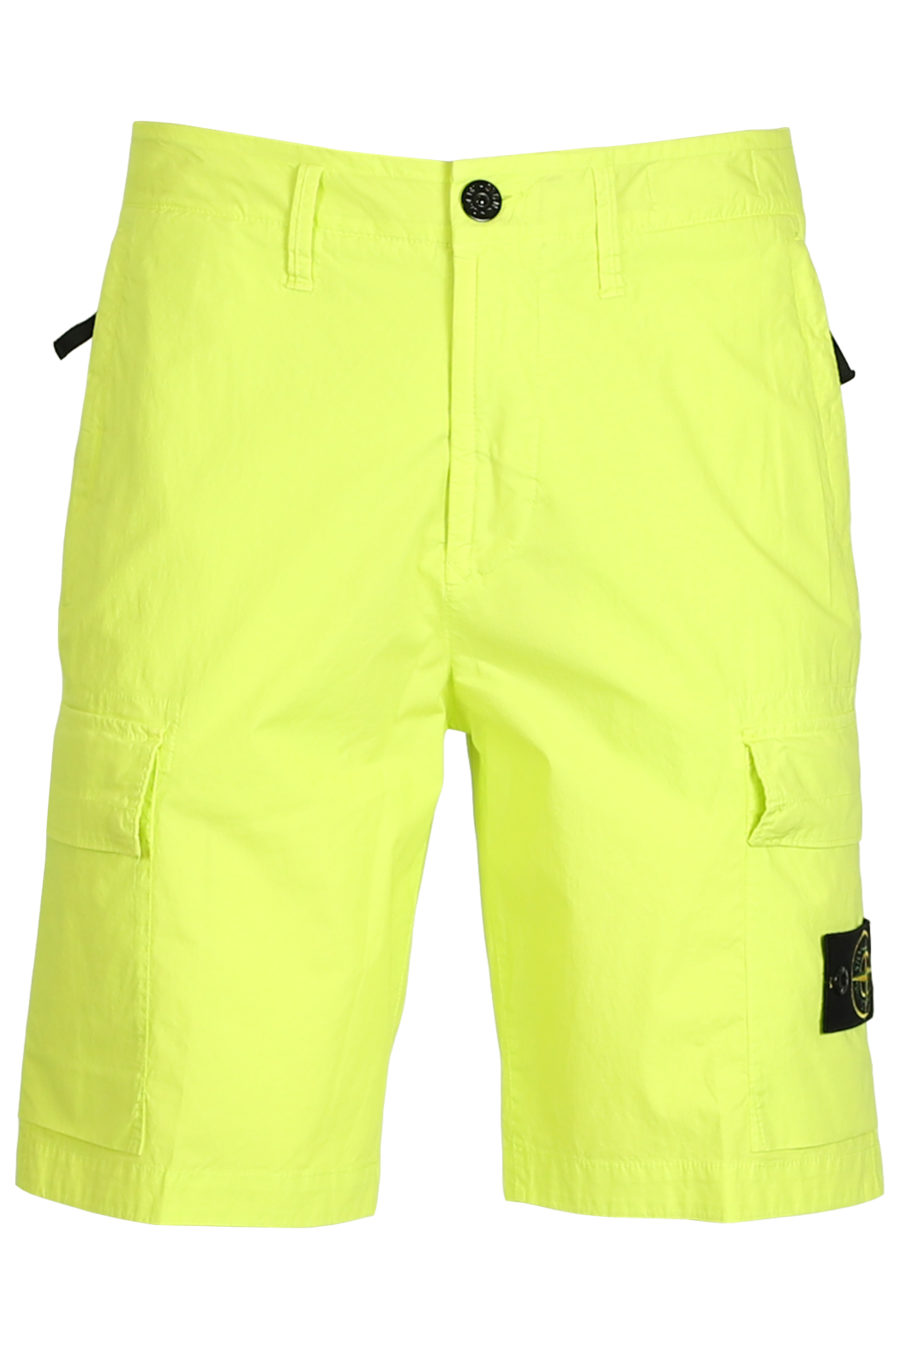 Pantalón corto verde lima - IMG 3763